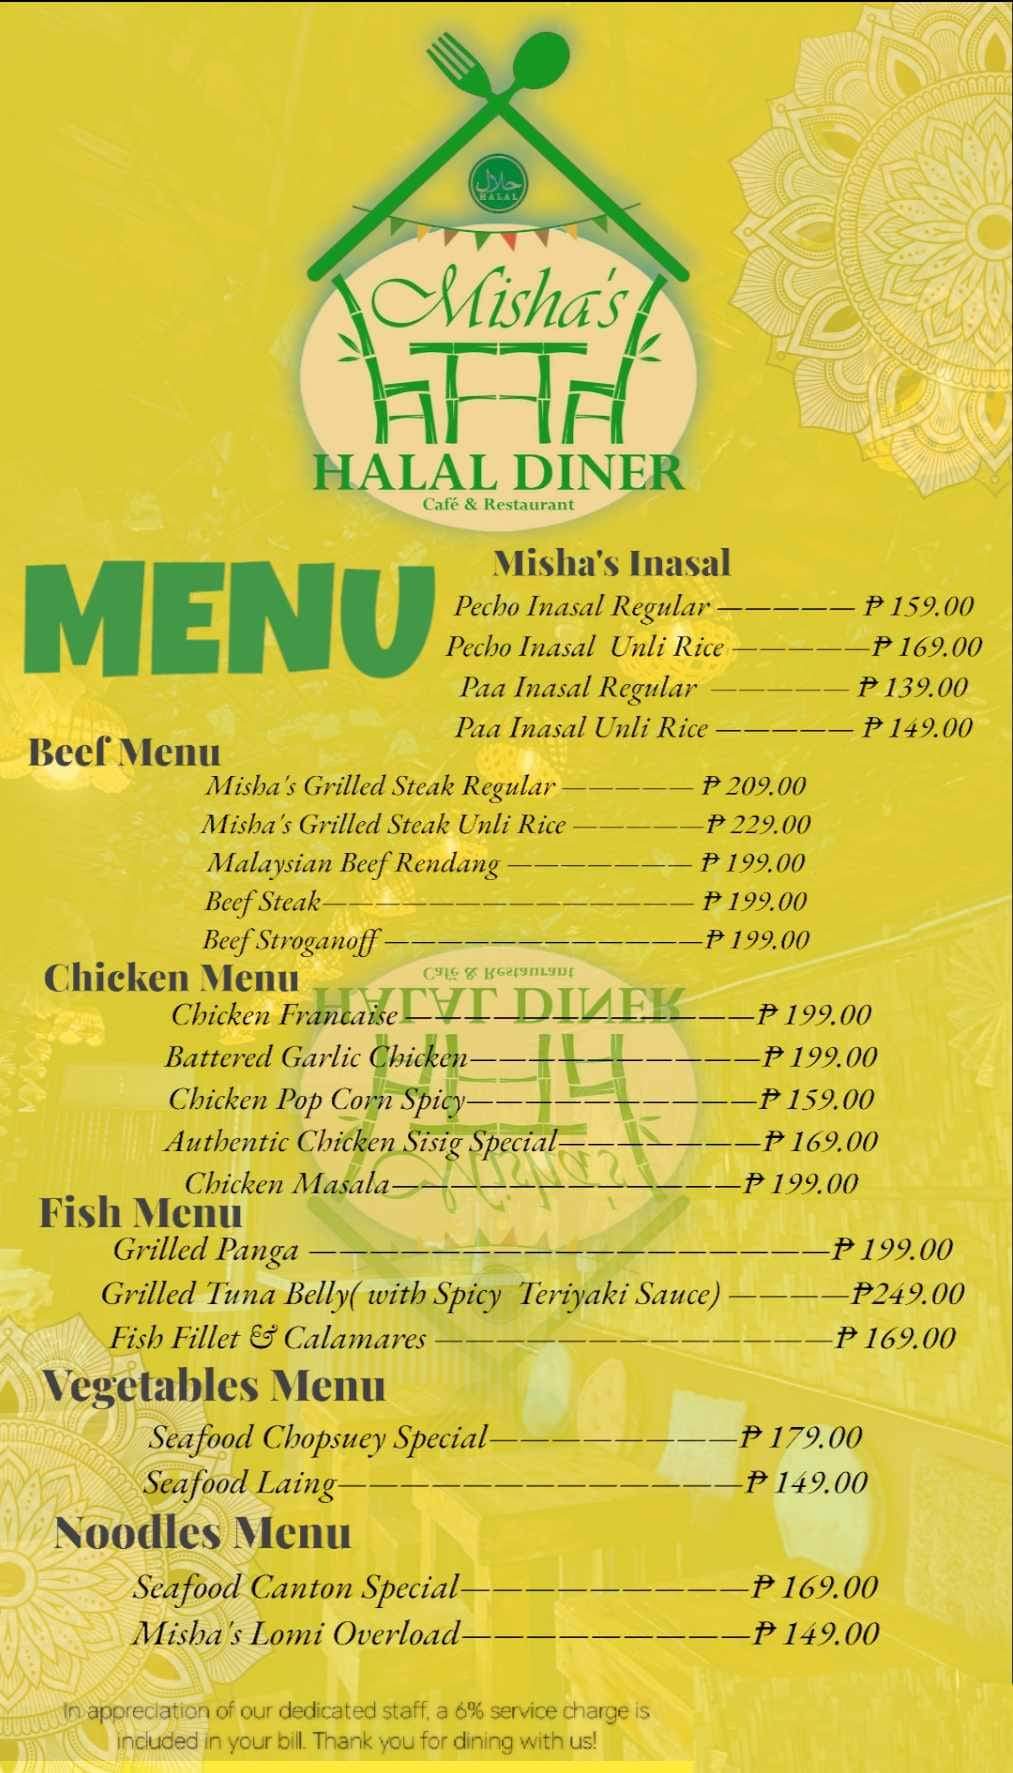 Misha's Halal Diner menu